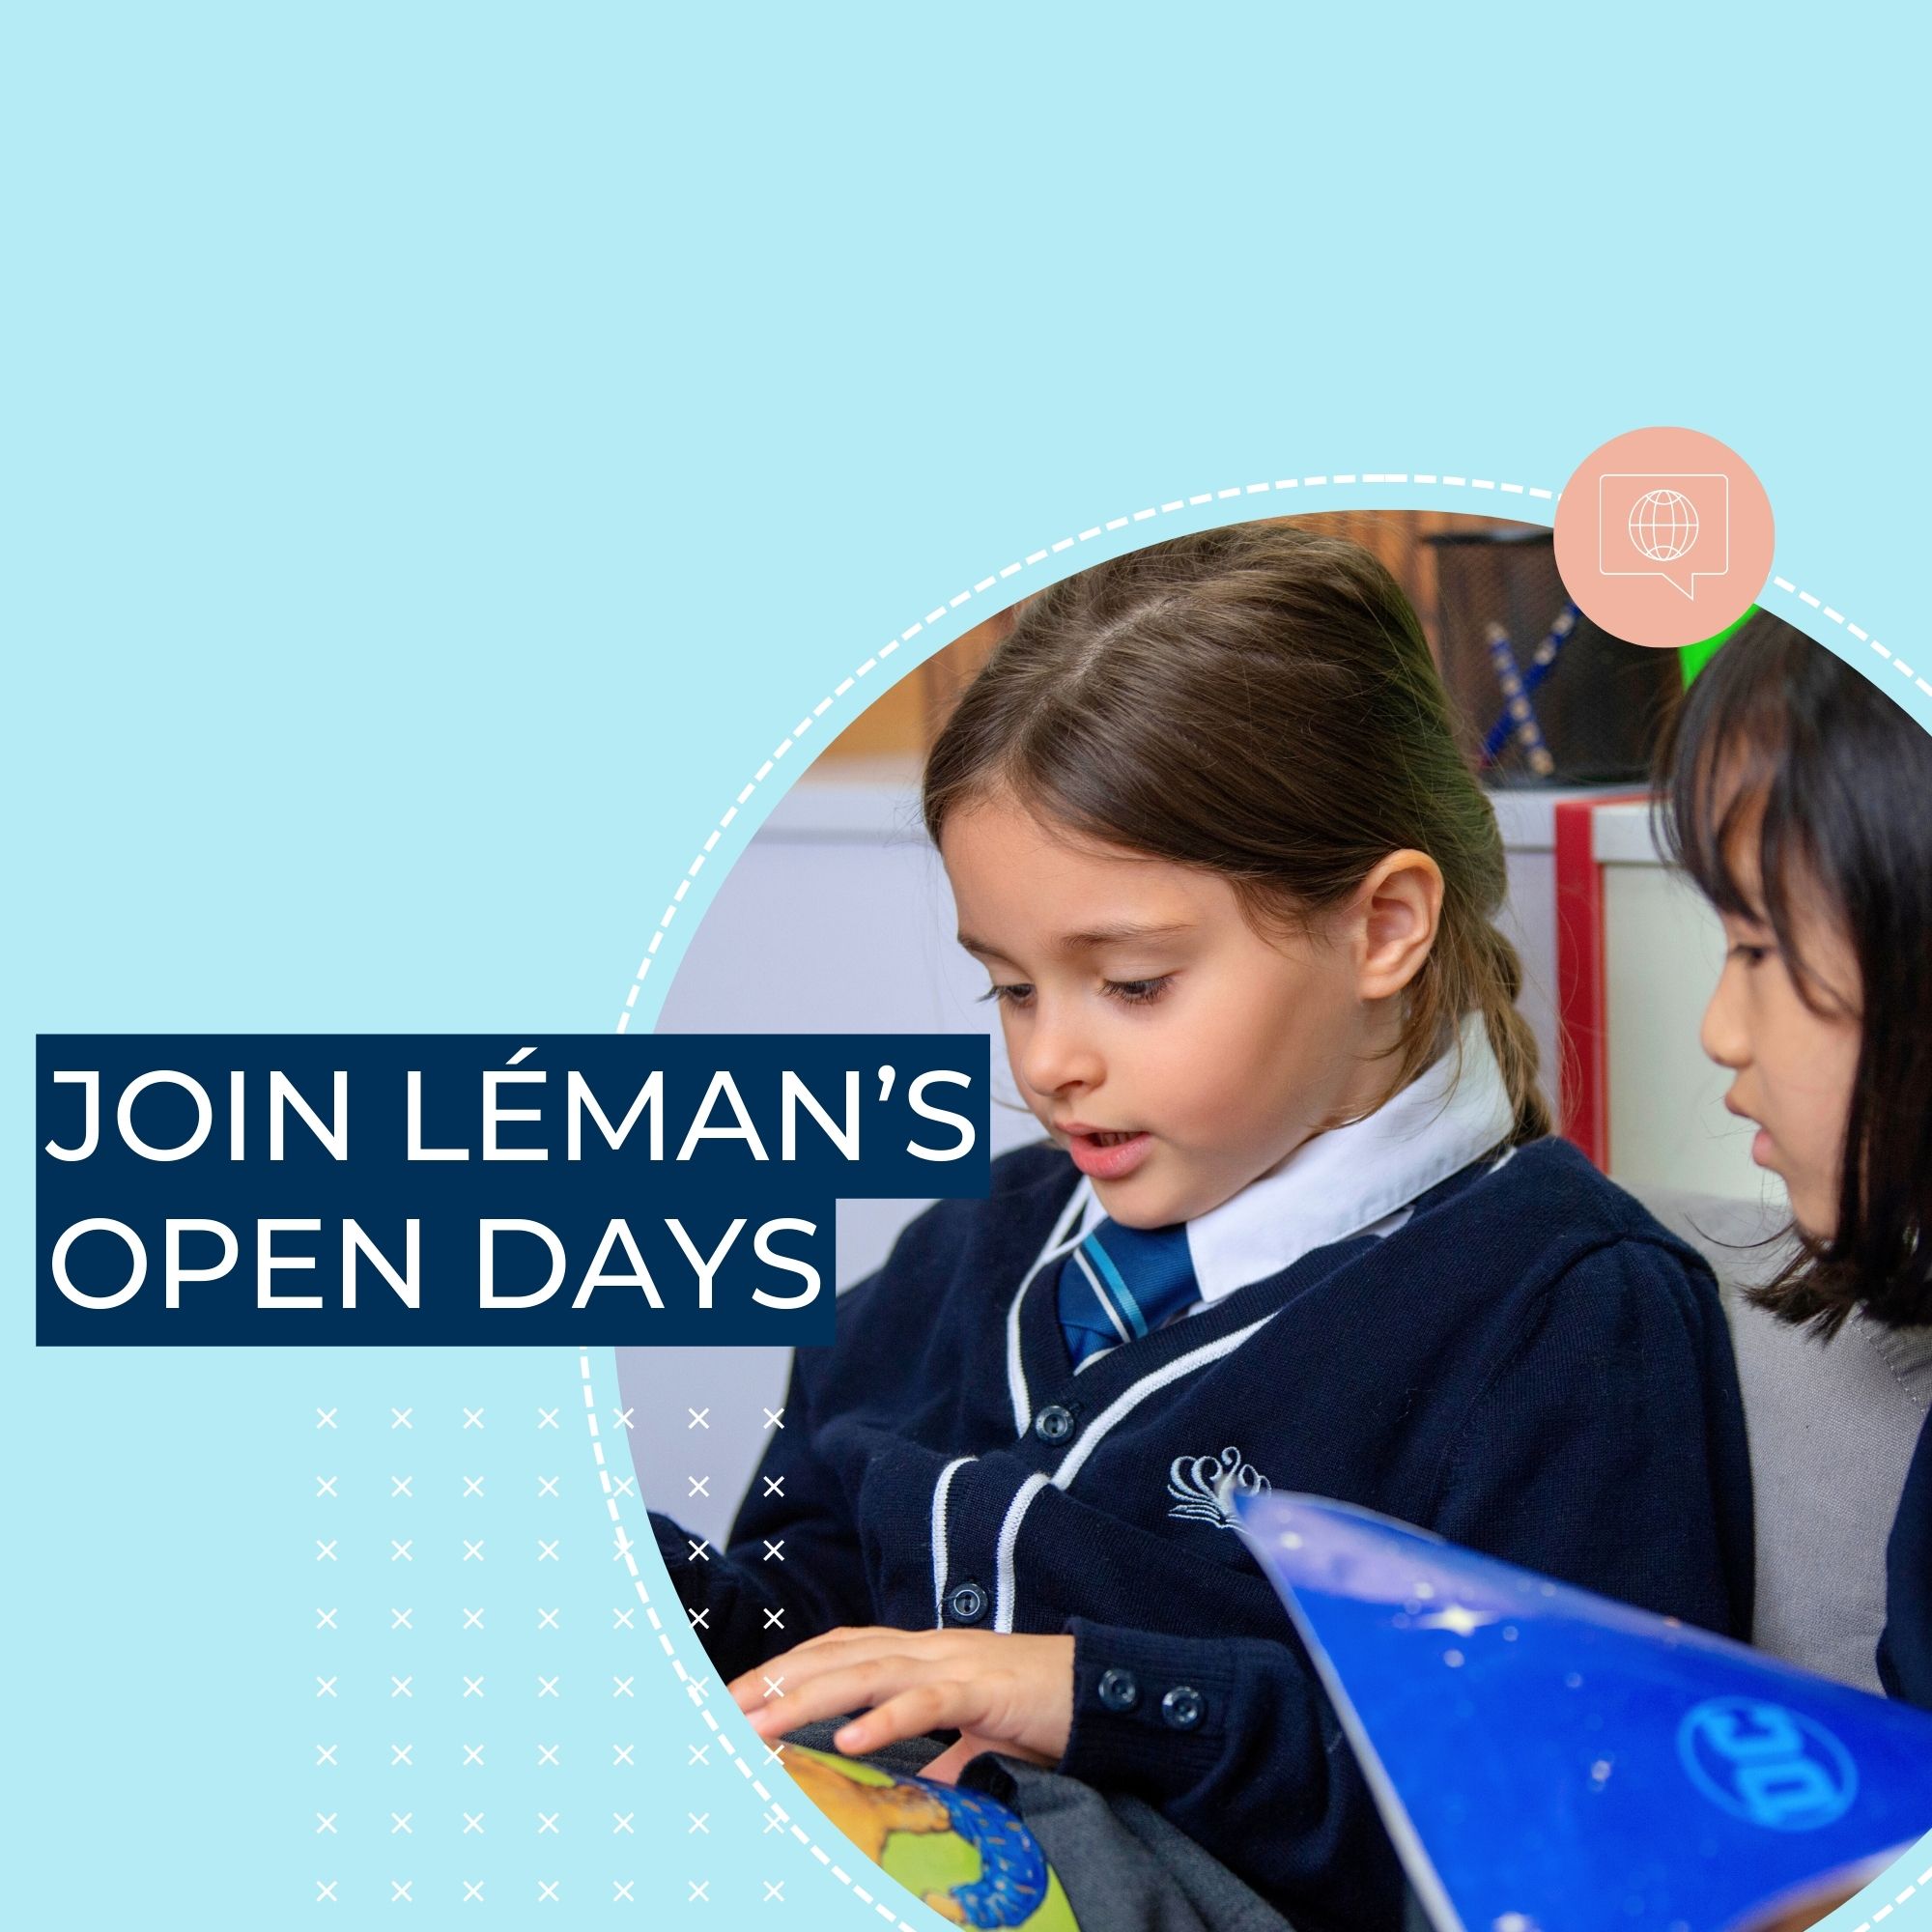 Join Lemans Open Days - Join Lemans Open Days